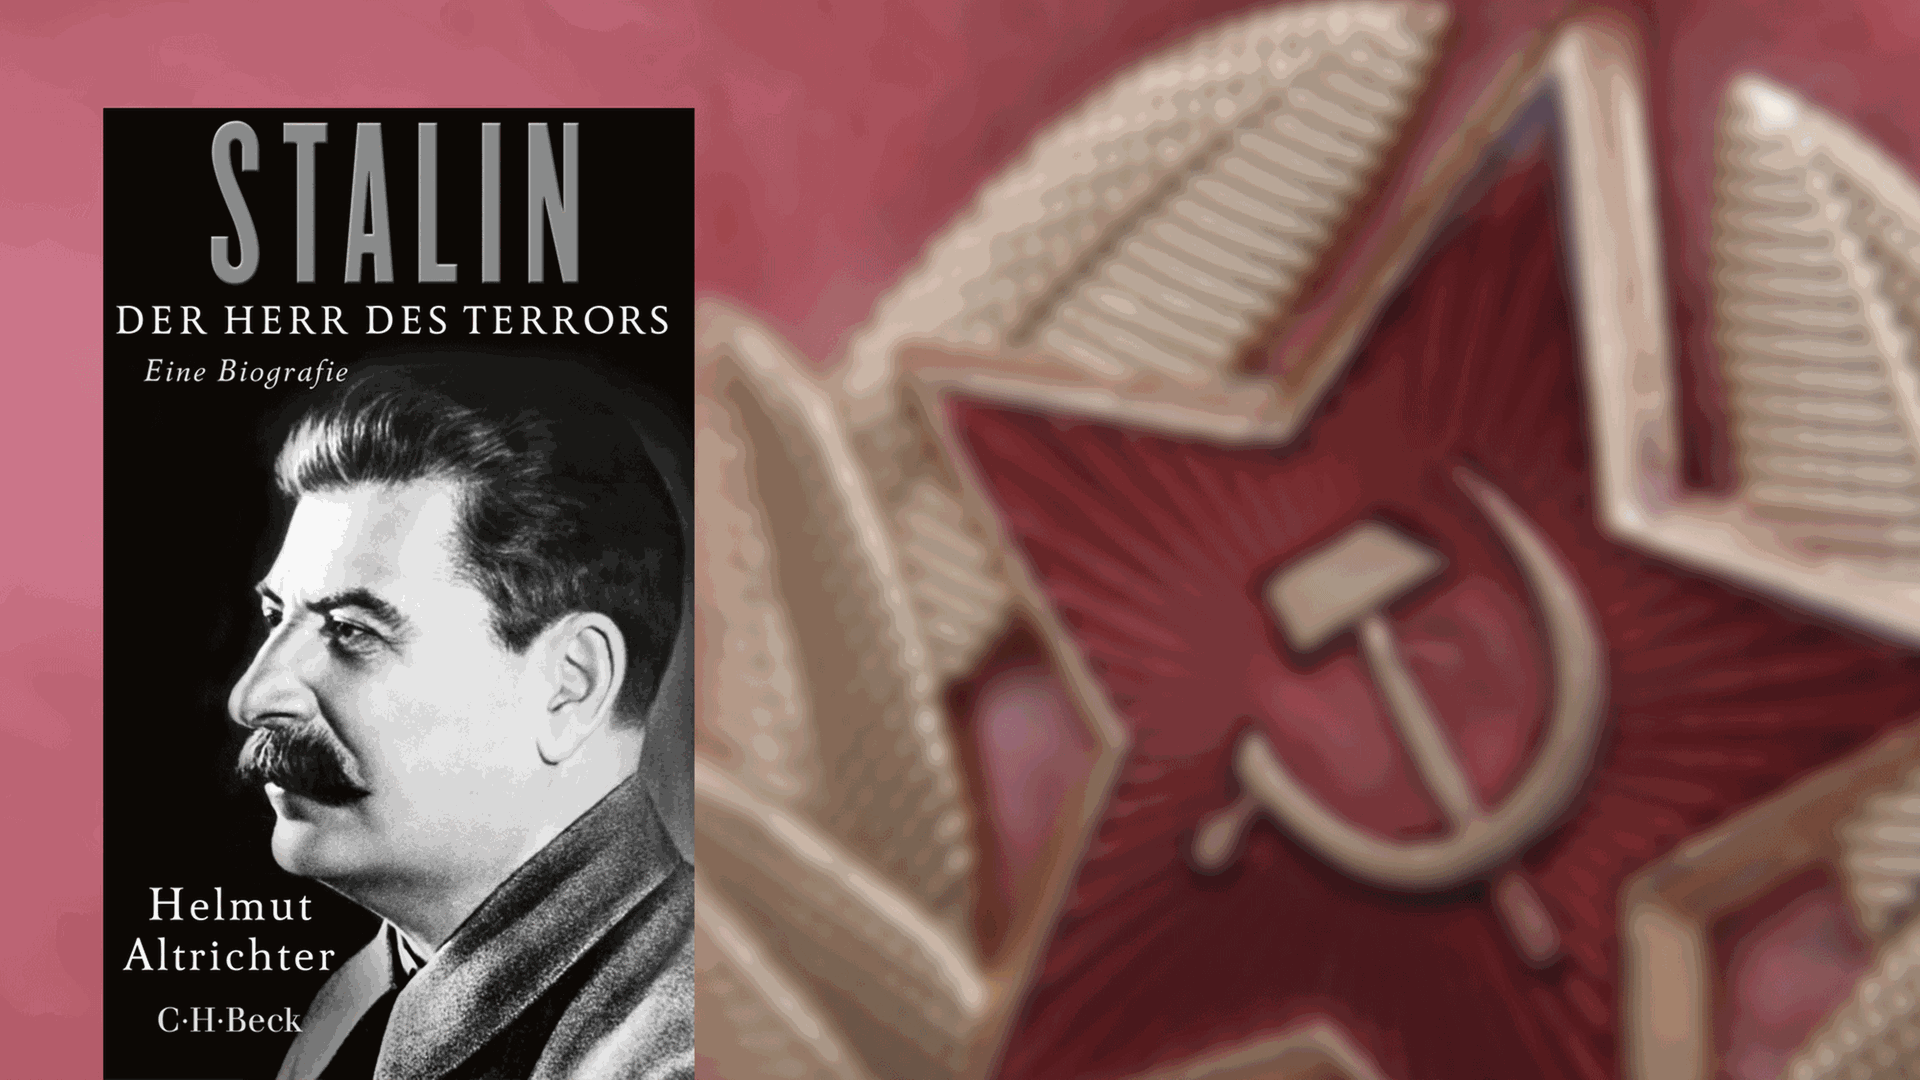 Cover von "Stalin. Der Herr des Terrors", im Hintergrund: Tschapka mit dem Emblem der Sowjetunion